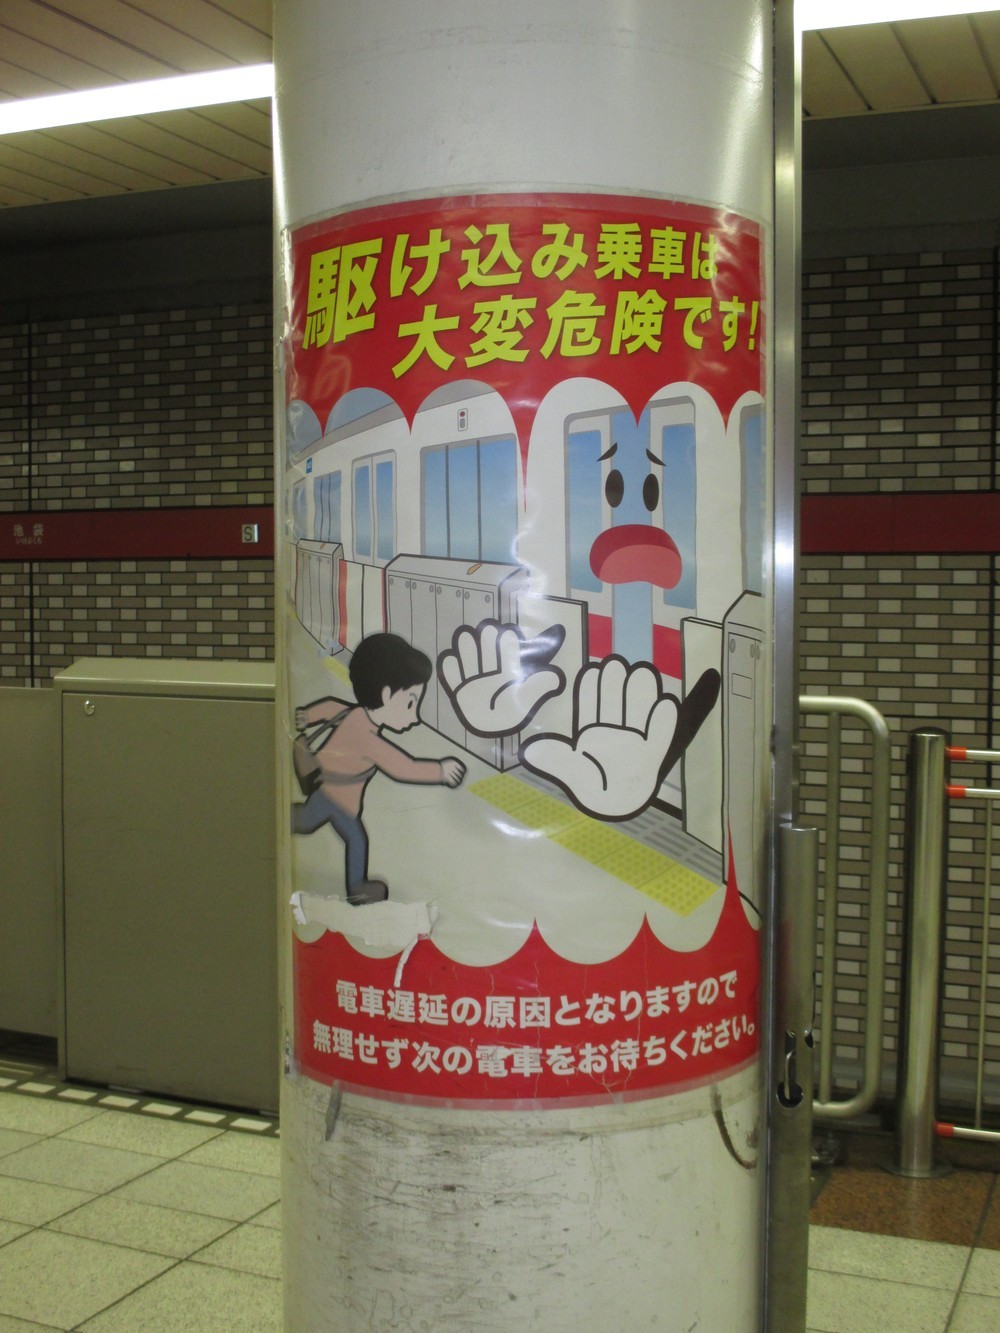 駆け込み乗車をしないように呼びかけるポスター（東京・池袋の西武線の駅で）